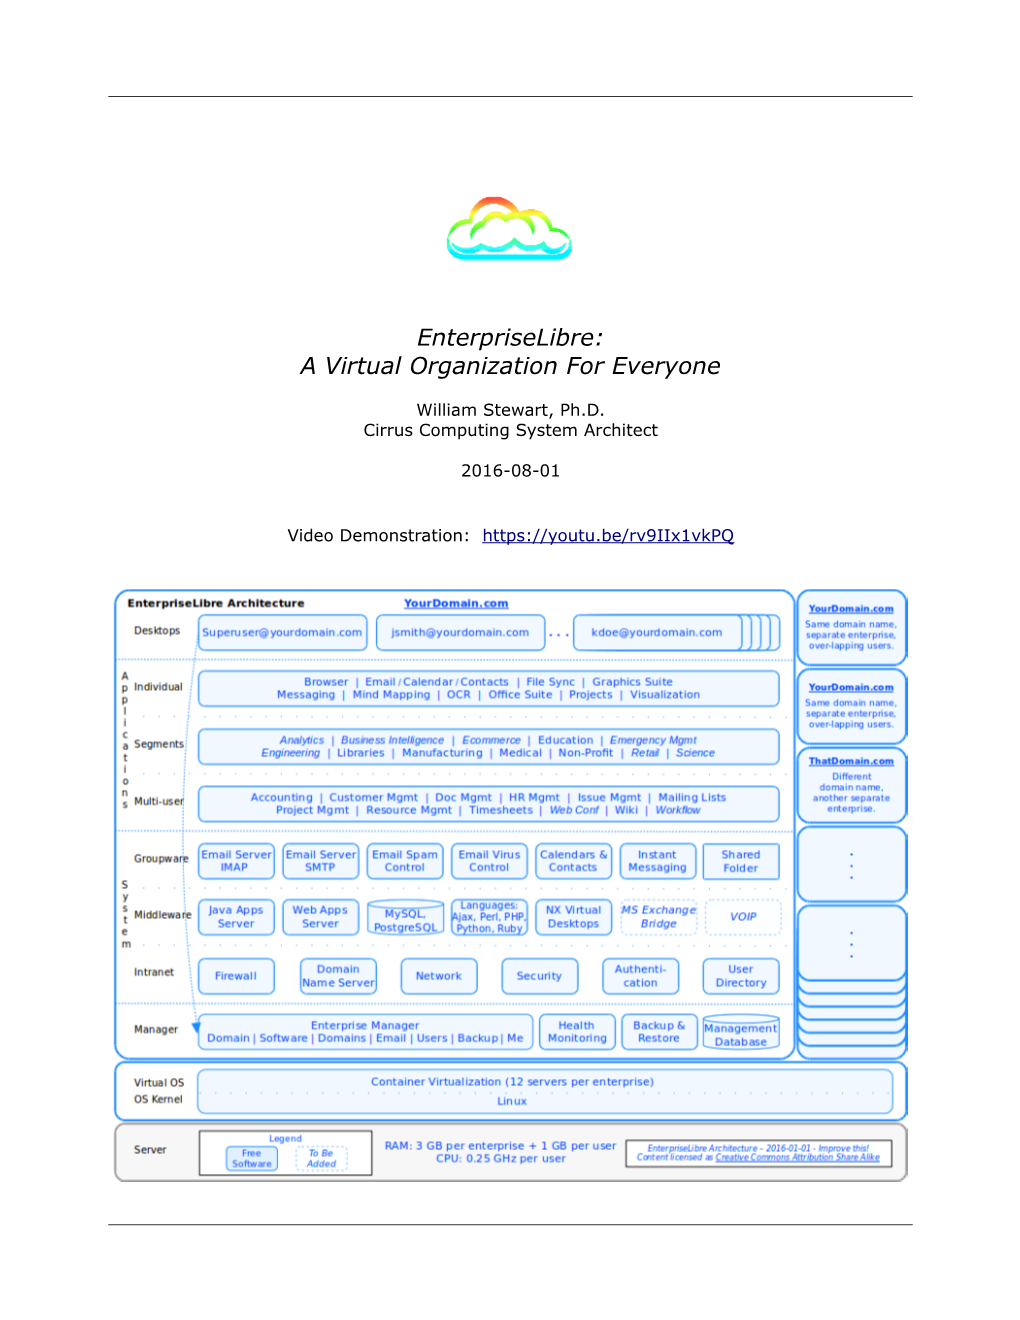 Enterpriselibre: a Virtual Organization for Everyone